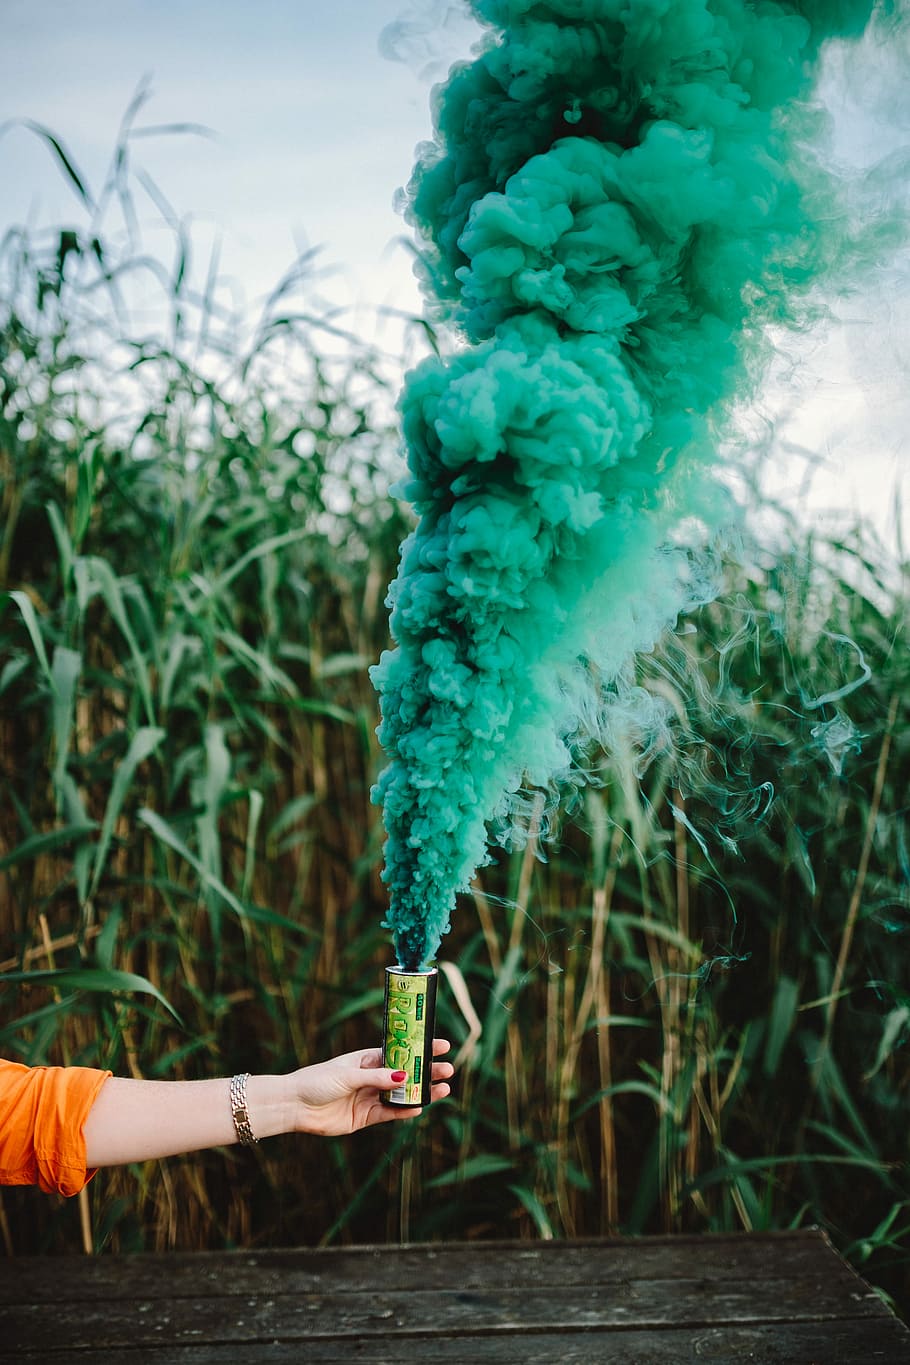 bomba de fumaça verde, bomba de fumaça, resumo, plano de fundo, ao ar livre, fumaça verde, verde, natureza, humano Mão, fumaça - estrutura física